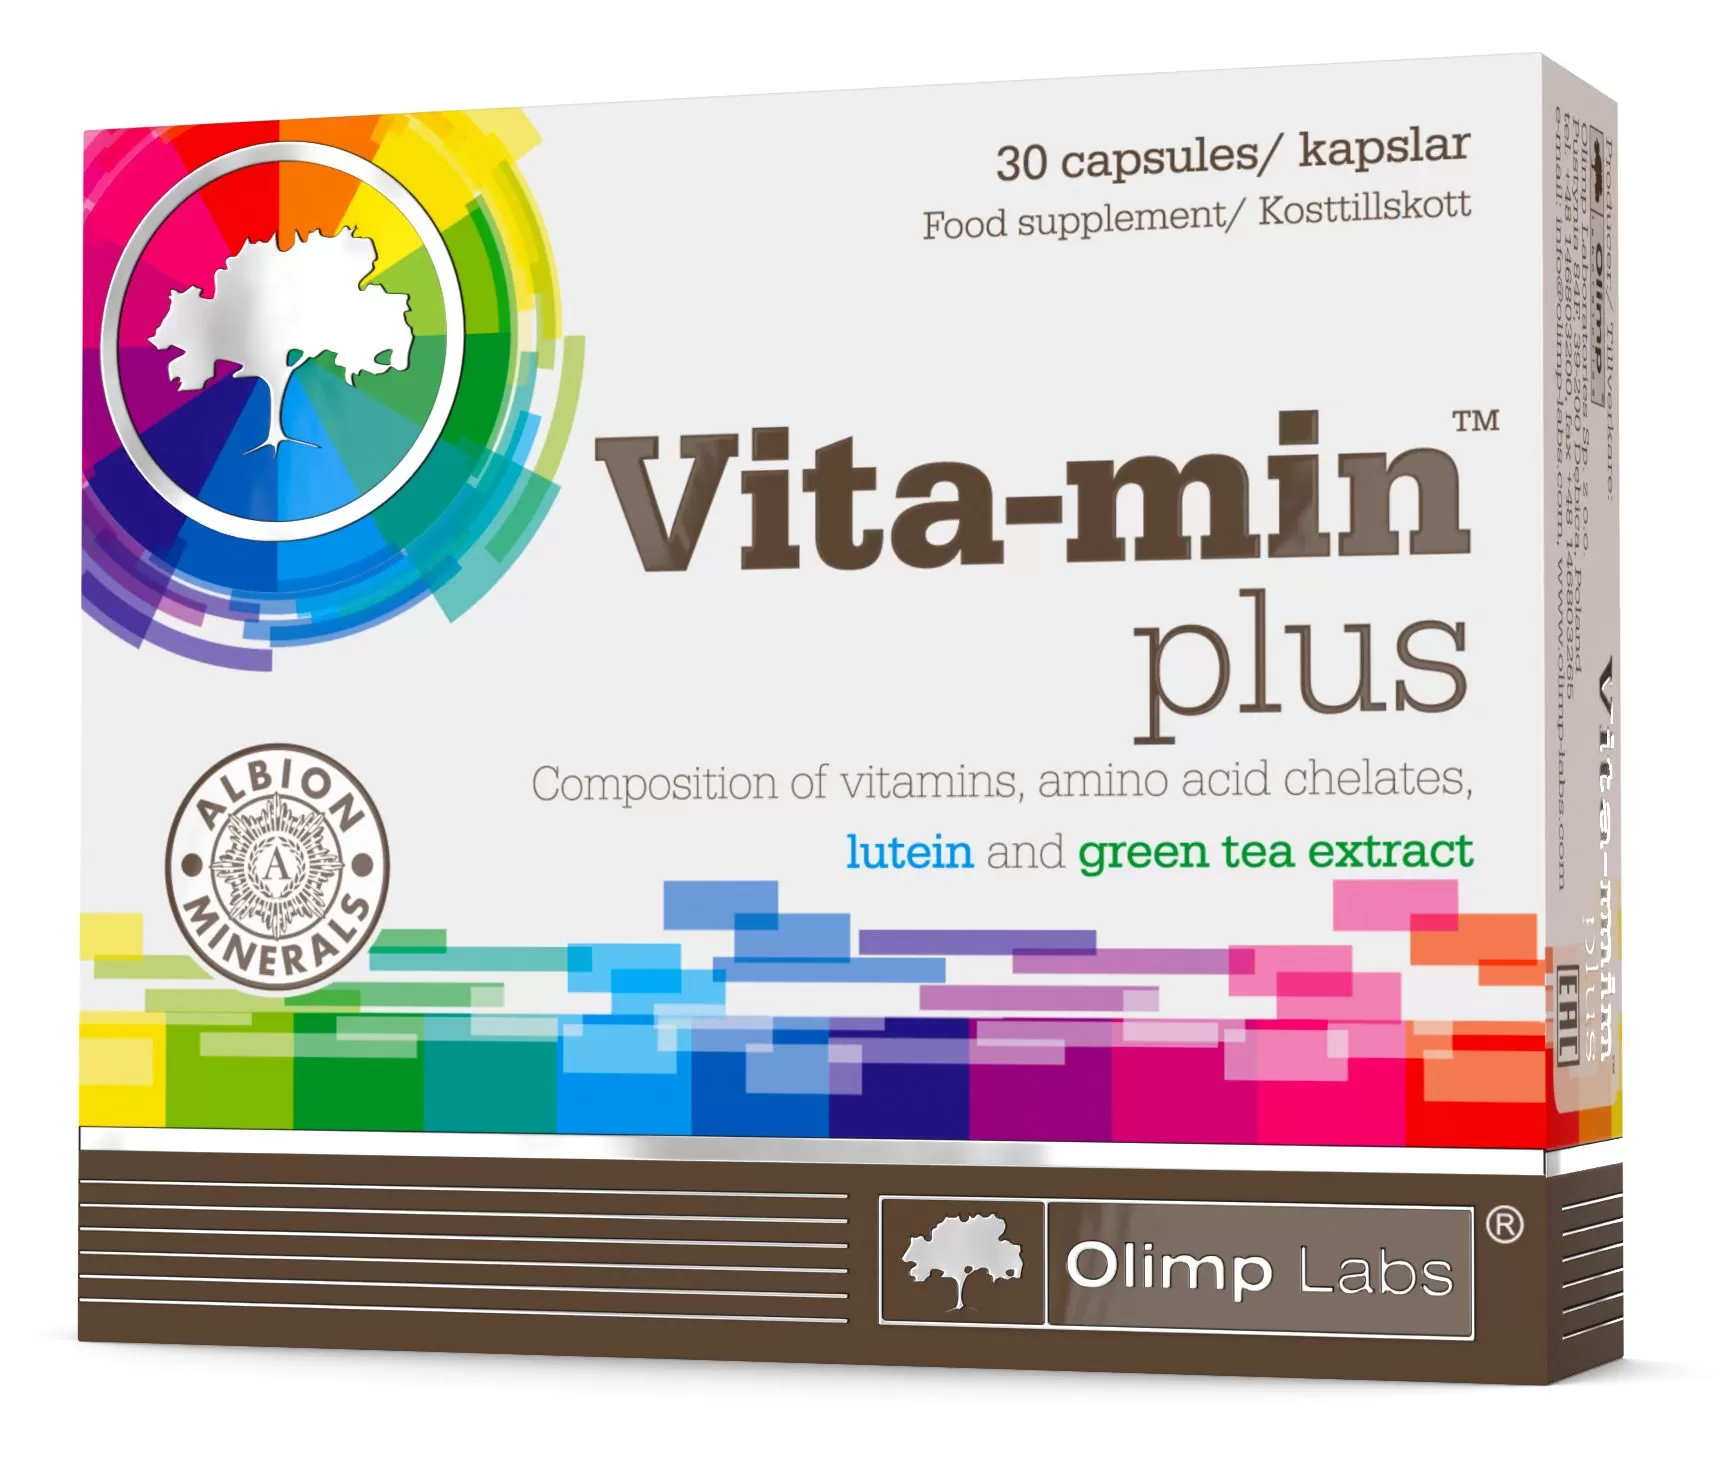 Olimp vita. Витамины Olimp Labs Vita-min Plus 30 капс.. Olimp Vita-min Plus (30 кап). Vita-min Plus for women. Olimp Vita-min Plus состав.